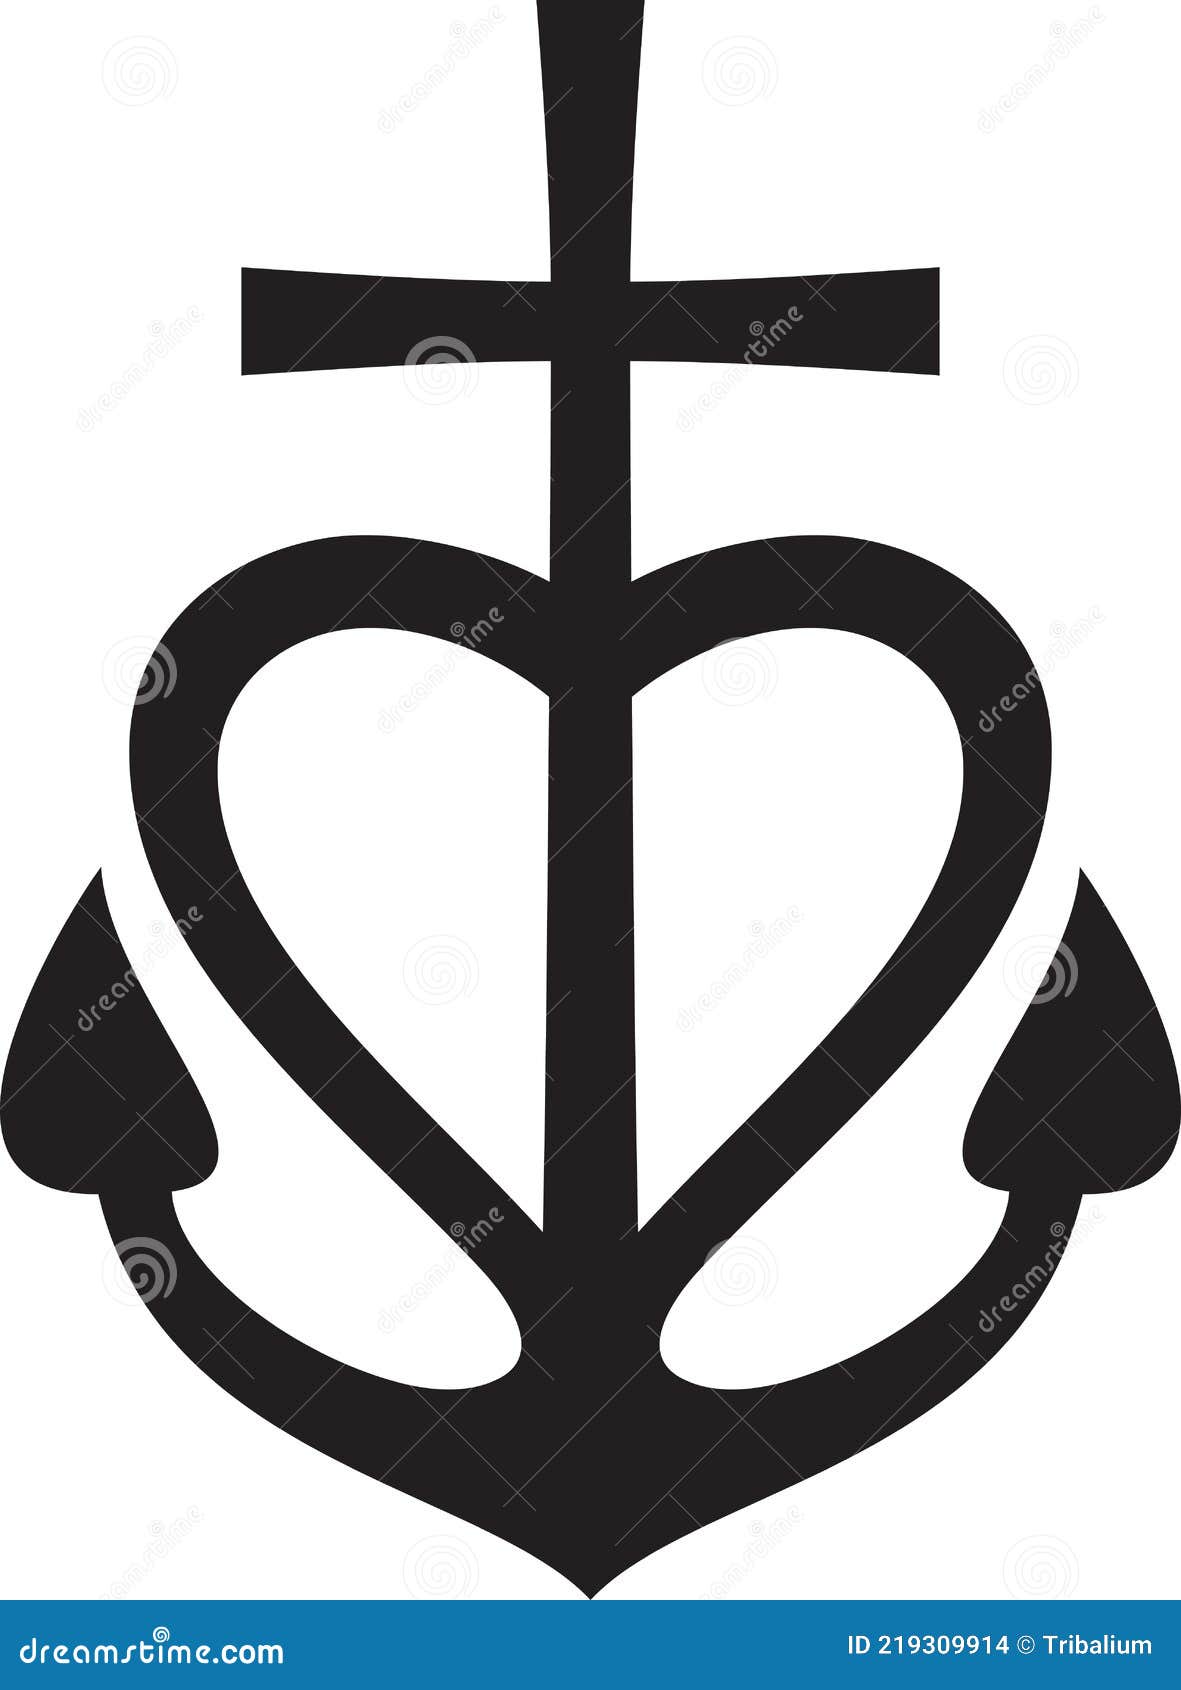 Cross, Heart, Anchor - Faith, Hope, Love Symbol. Faith Sign Stock ...